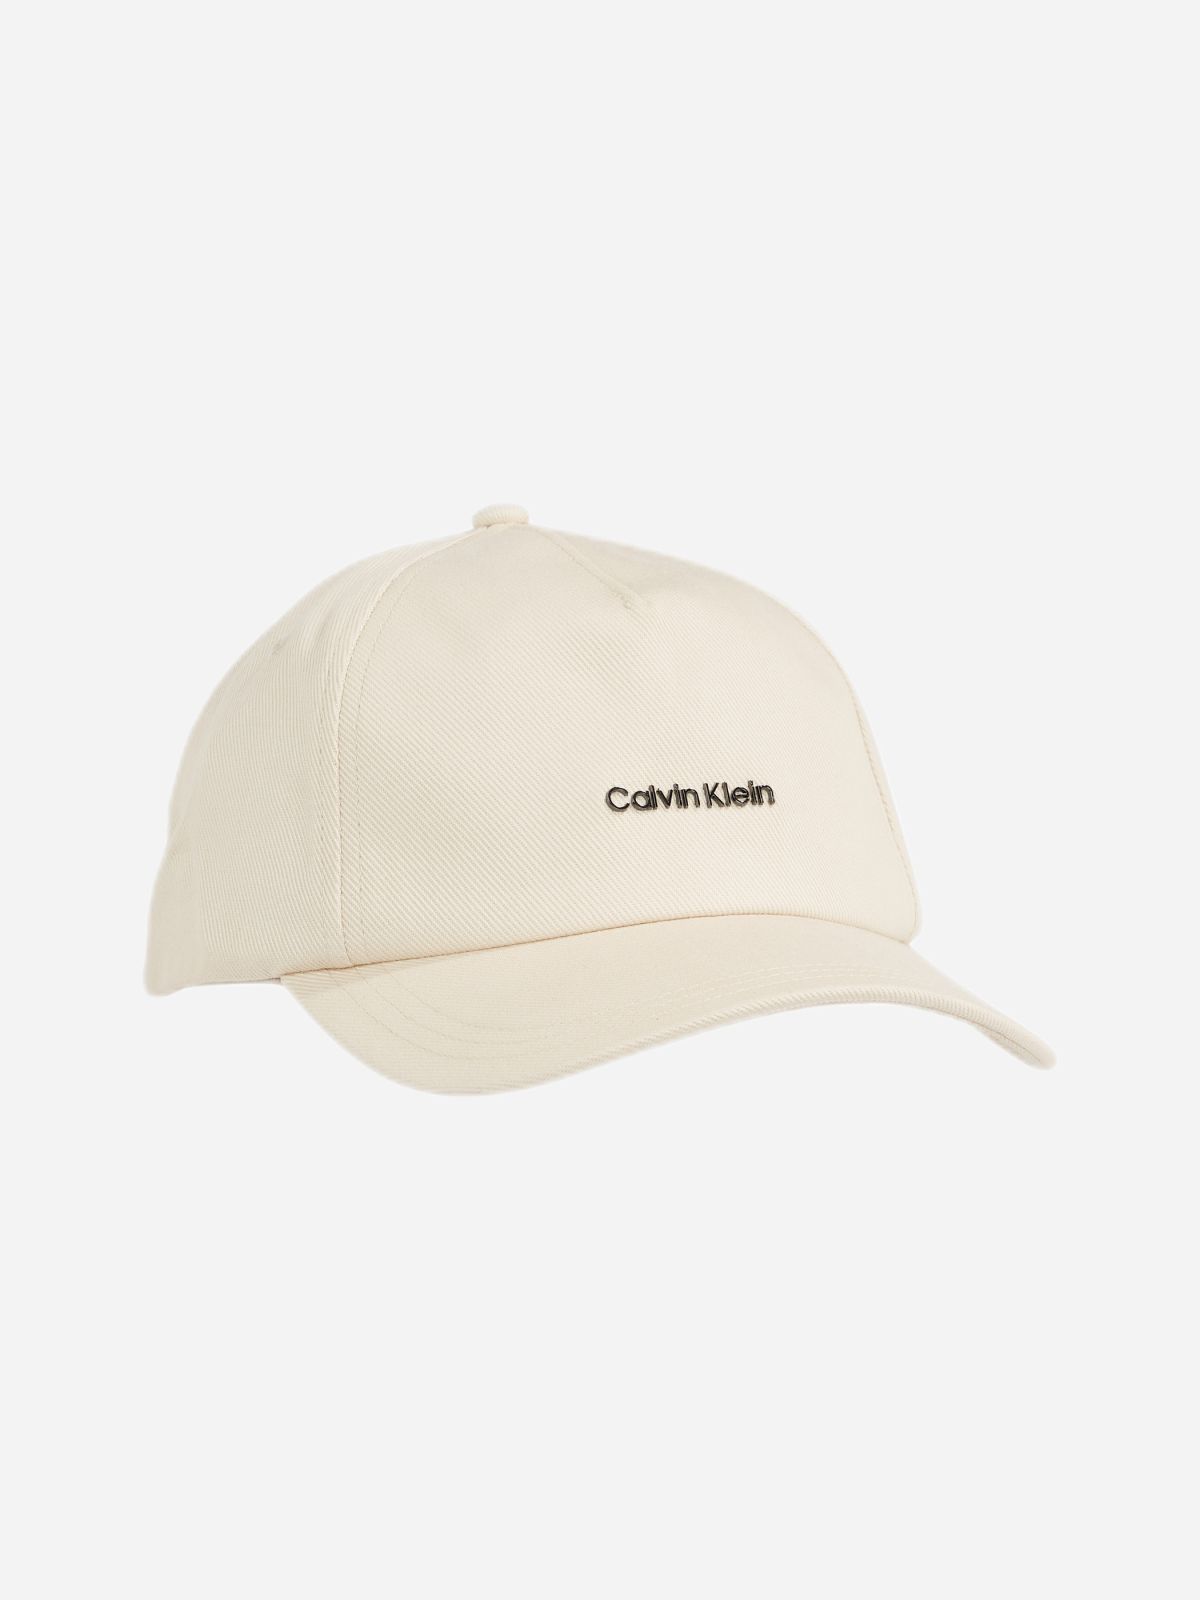  כובע מצחייה עם לוגו / נשים של CALVIN KLEIN